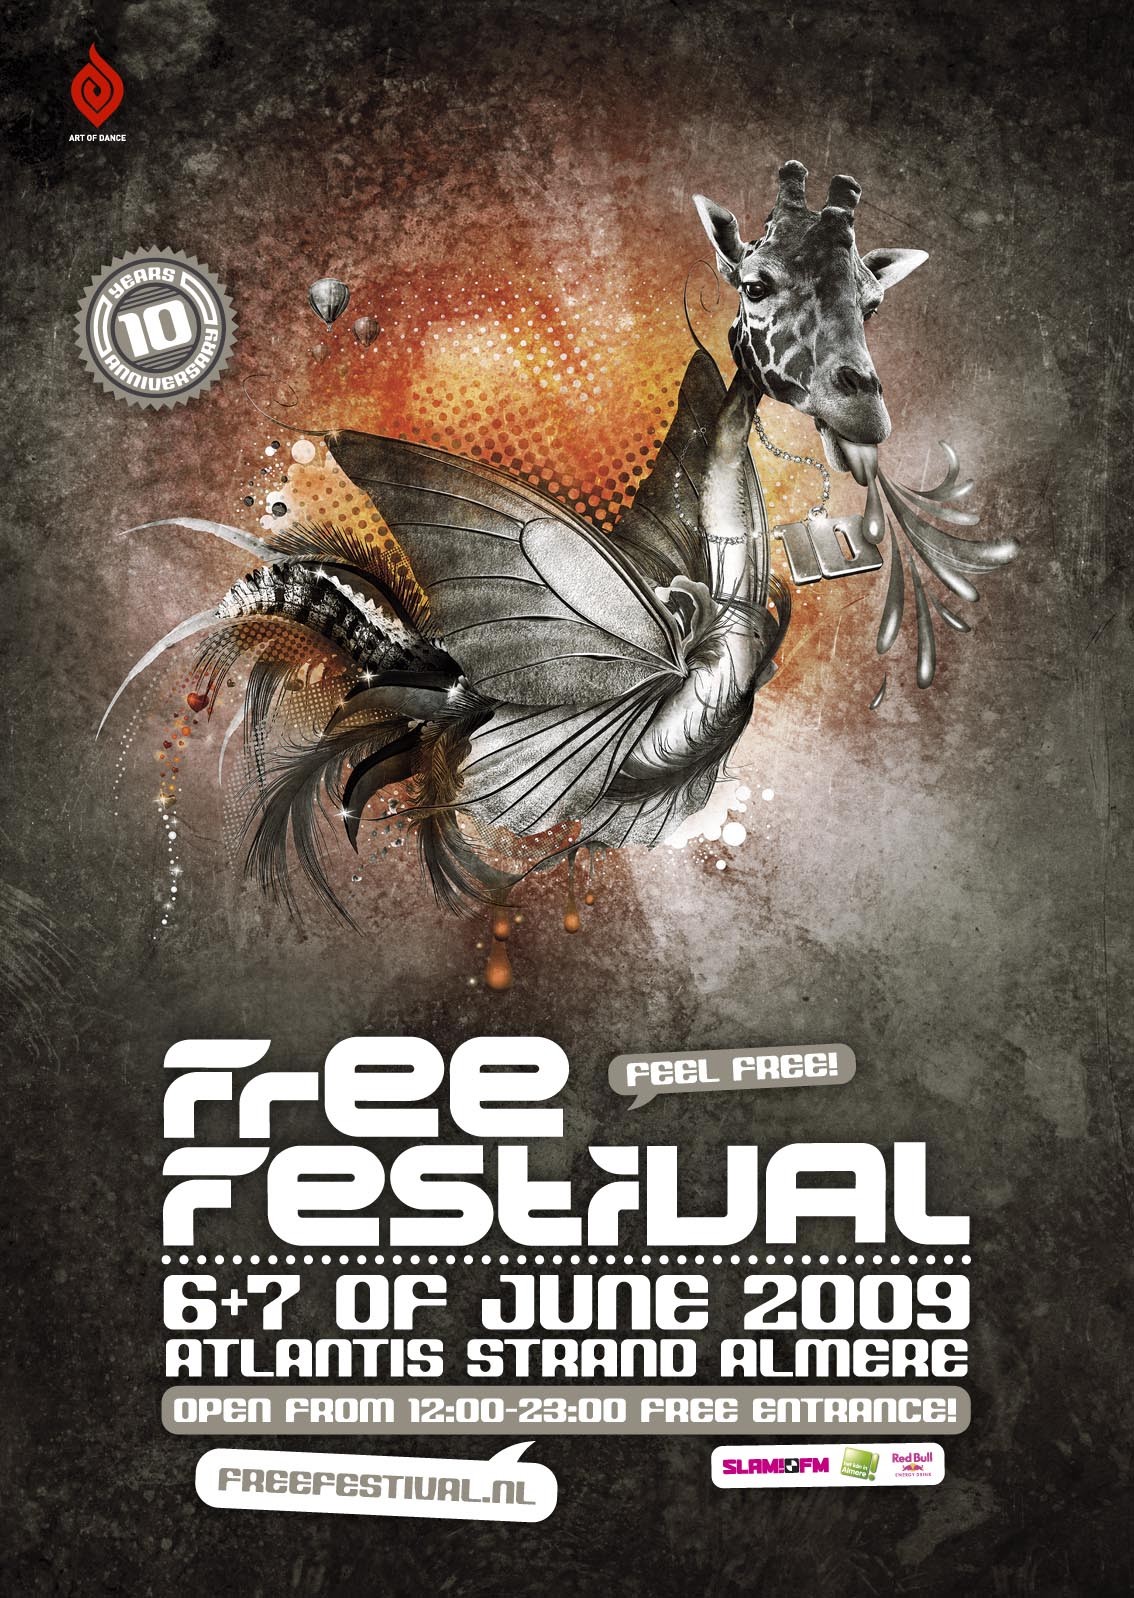 Free Festival 10 years anniversary weekender